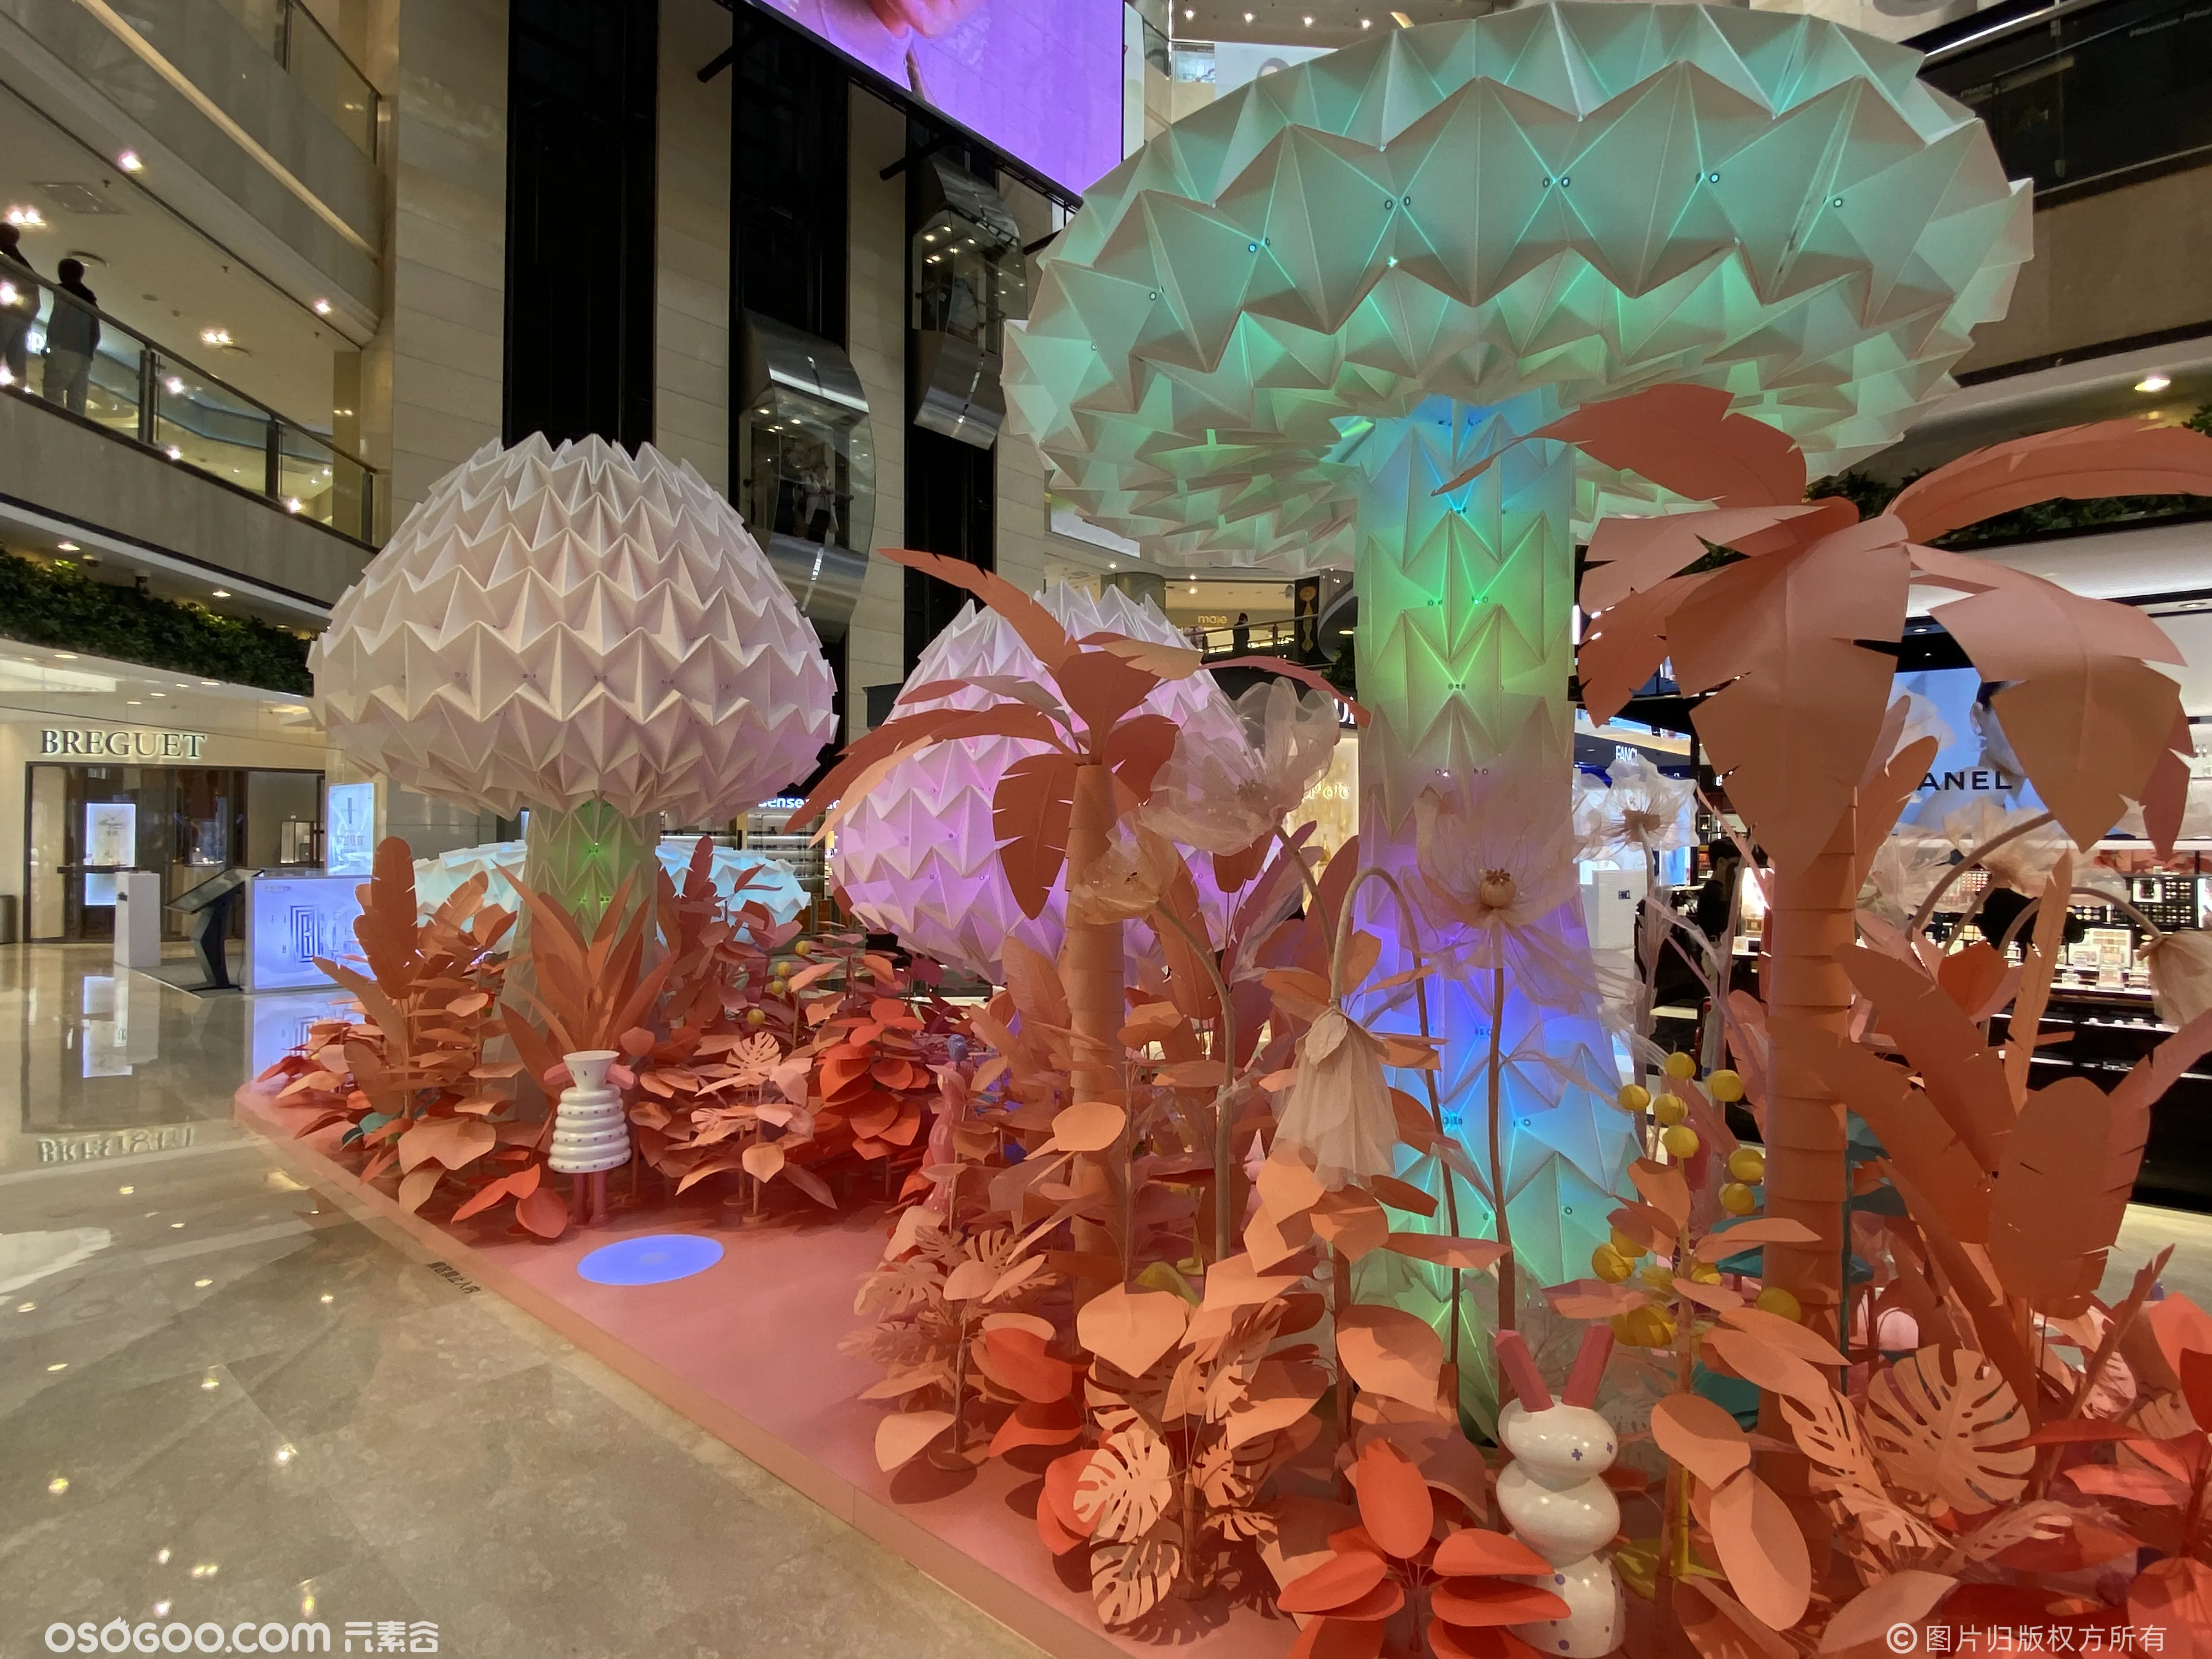 蘑菇树灯光装置 蘑菇树互动美陈装置 灯光节用品